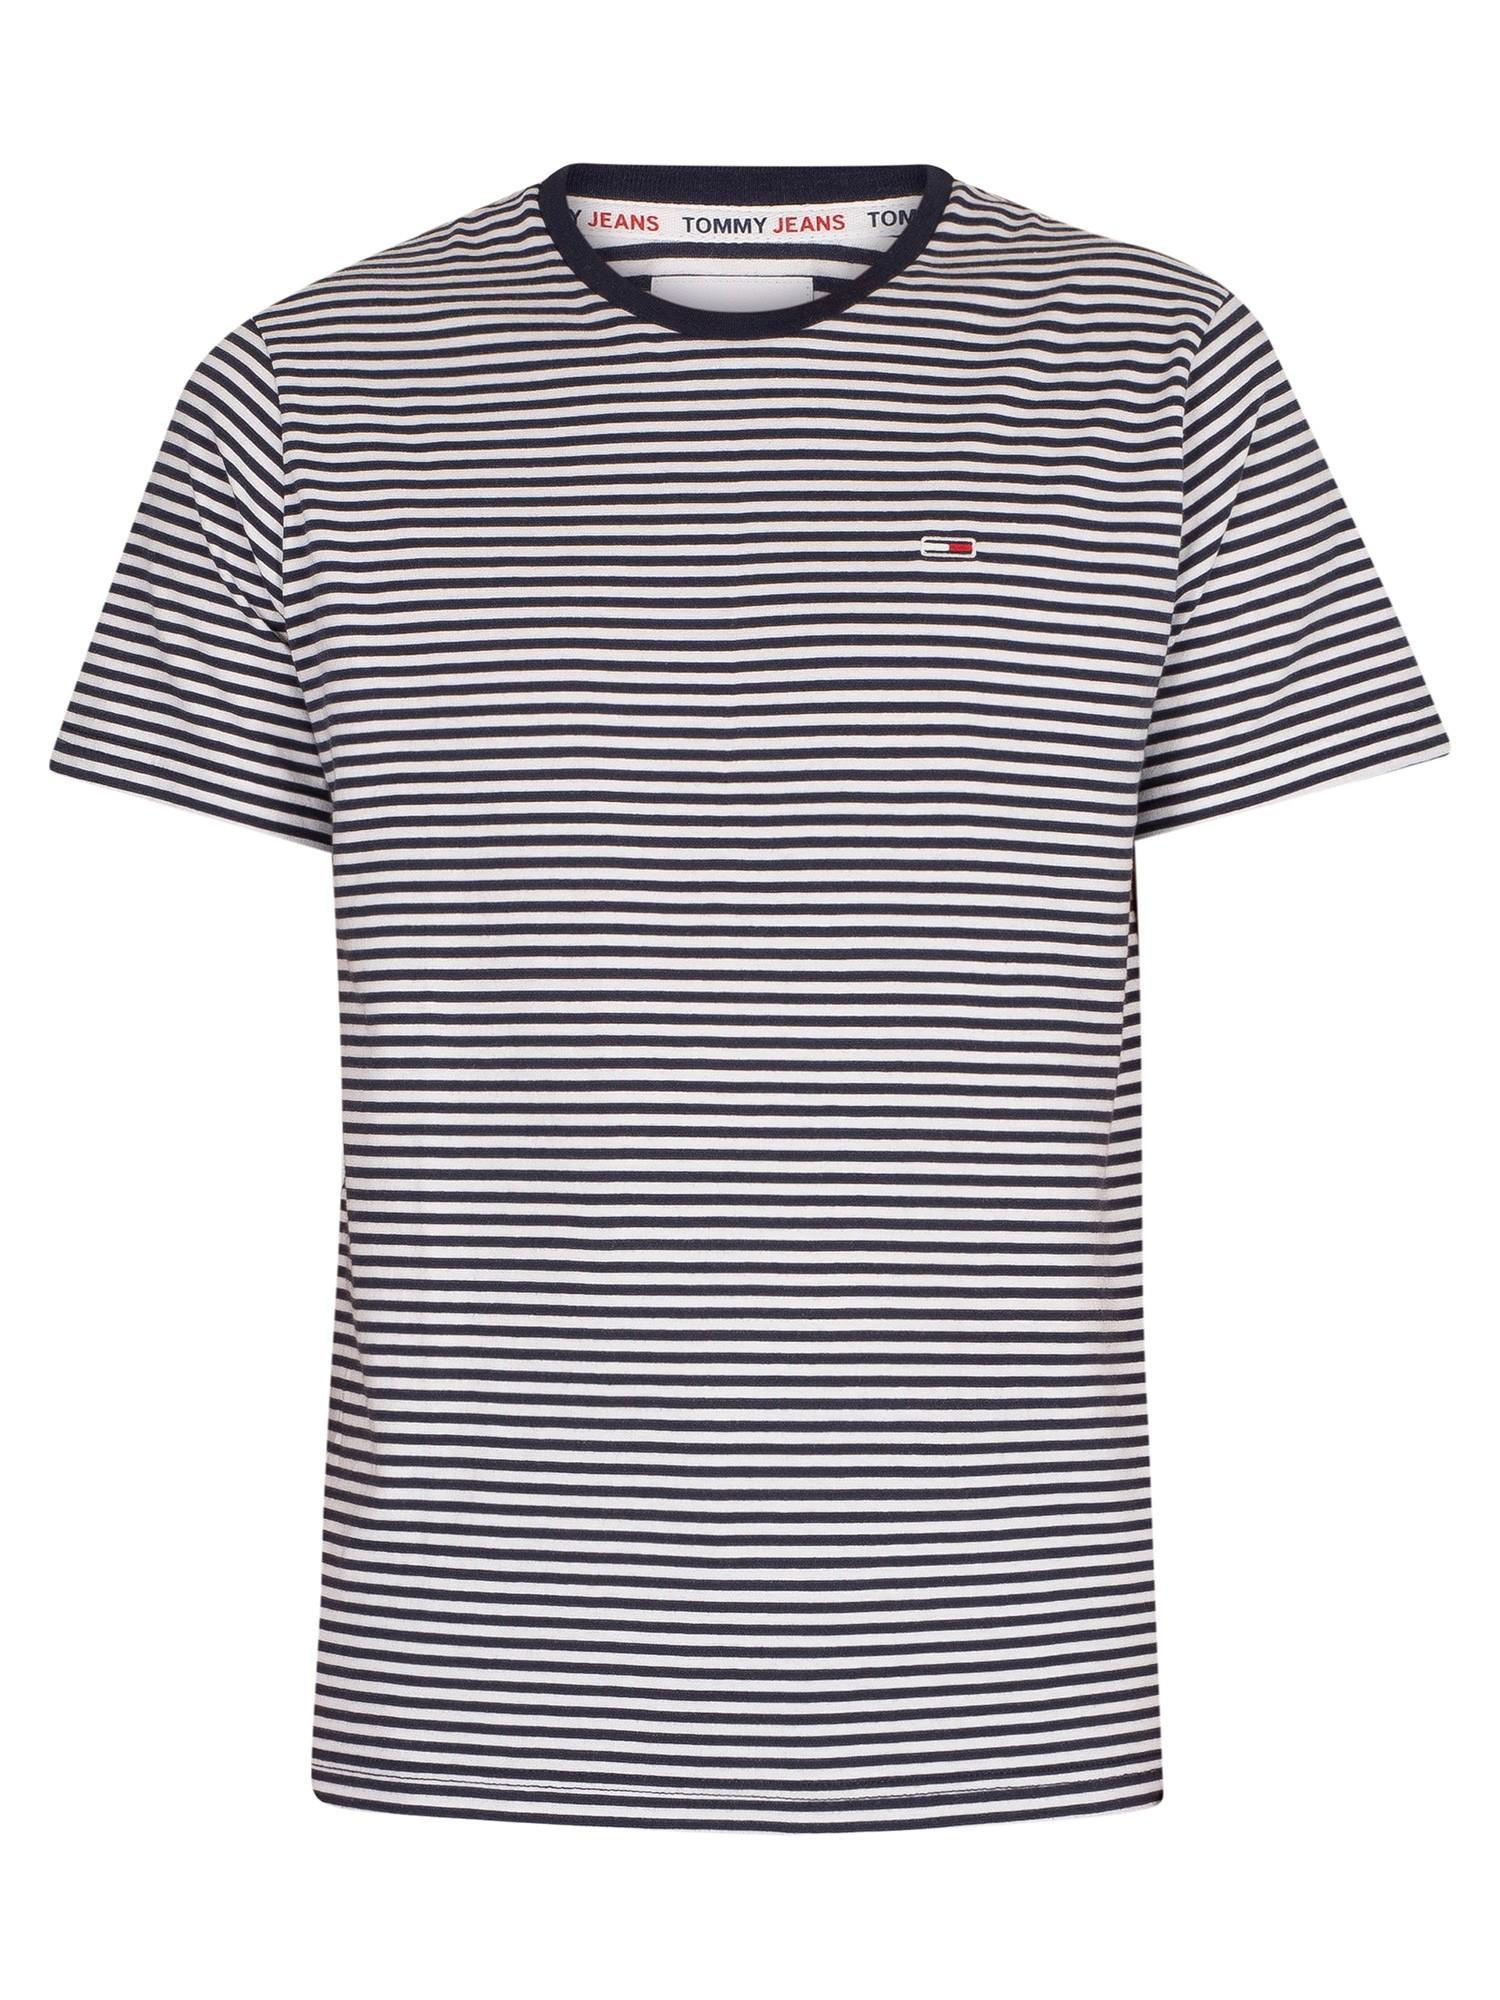 Tommy Hilfiger Denim Classics Stripe T-shirt in Twilight Navy (Blue 